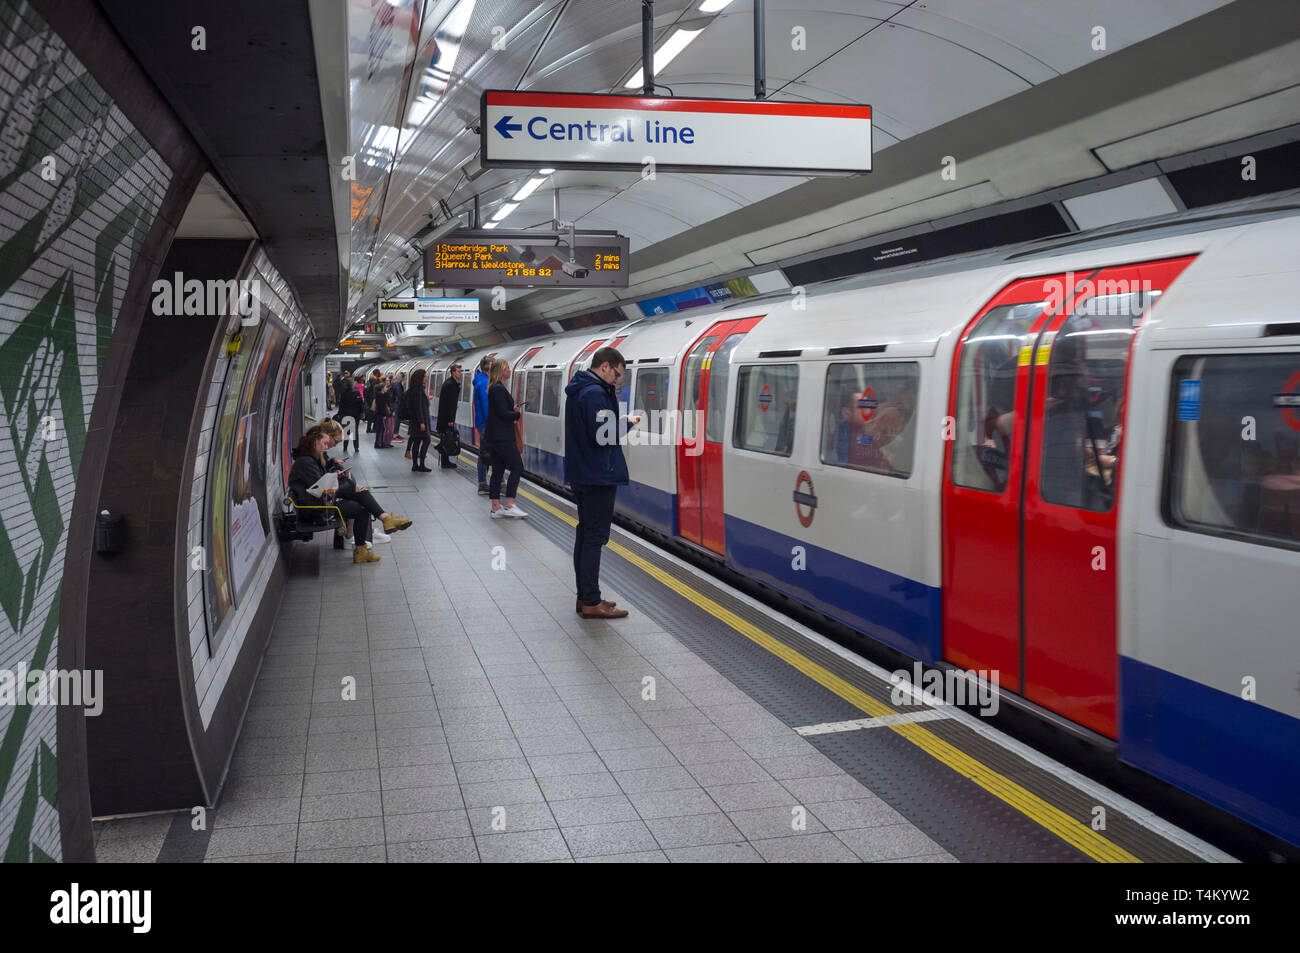 Les banlieusards attendre sur la plate-forme pour passer à une ligne centrale du tube, à la station de métro de Waterloo, Londres Banque D'Images